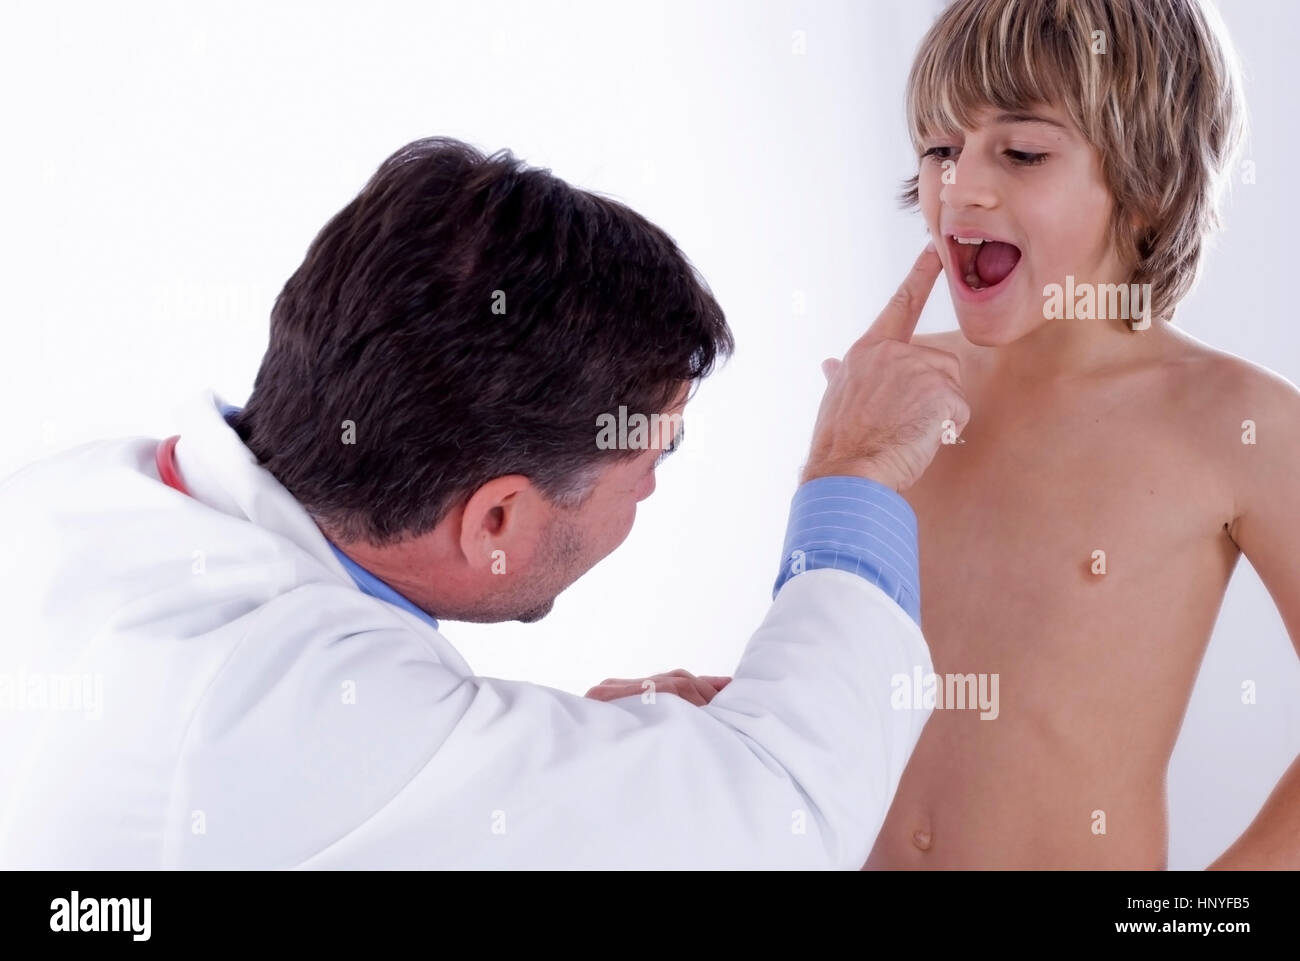 Model release , Kinderarzt - children's doctor Stock Photo